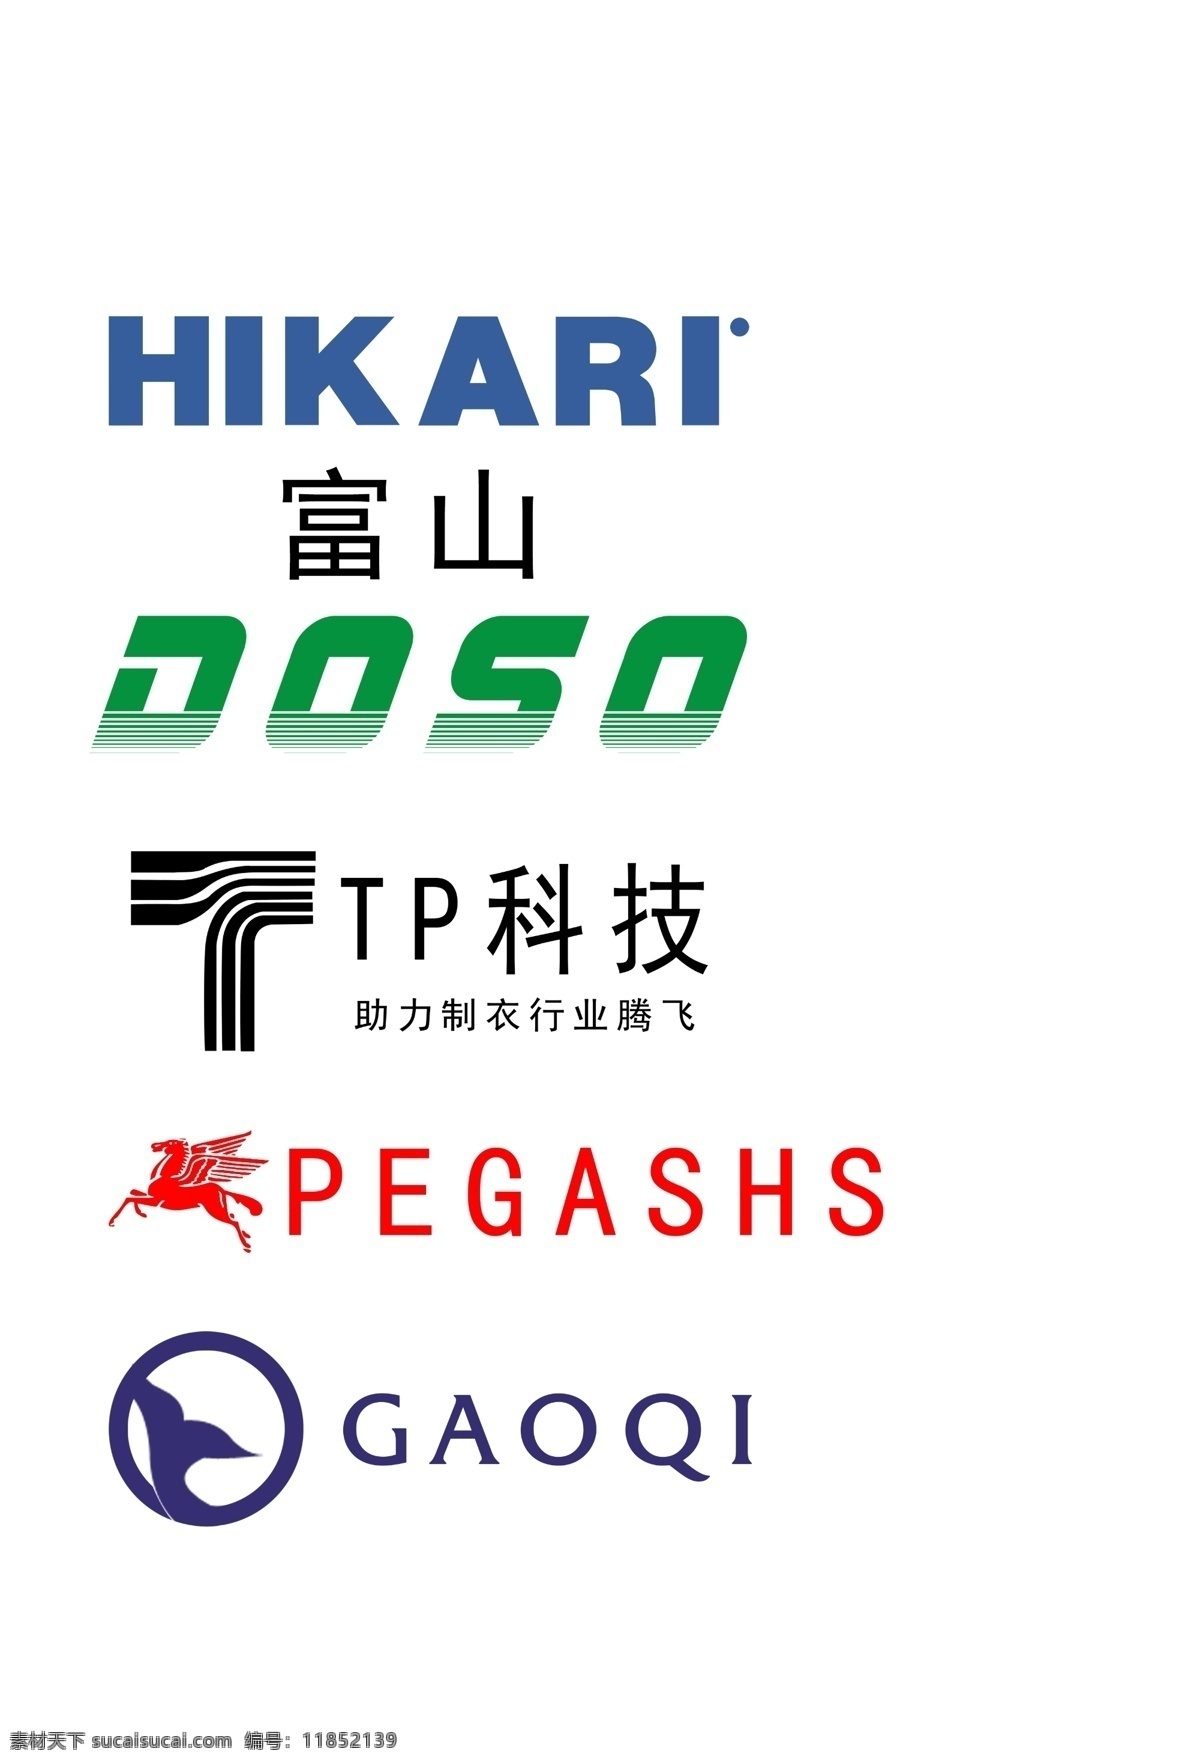 缝纫设备 logo 商业logo 富山标志 doso标志 tp科技标志 pegashs 标志 gaoqi 白色